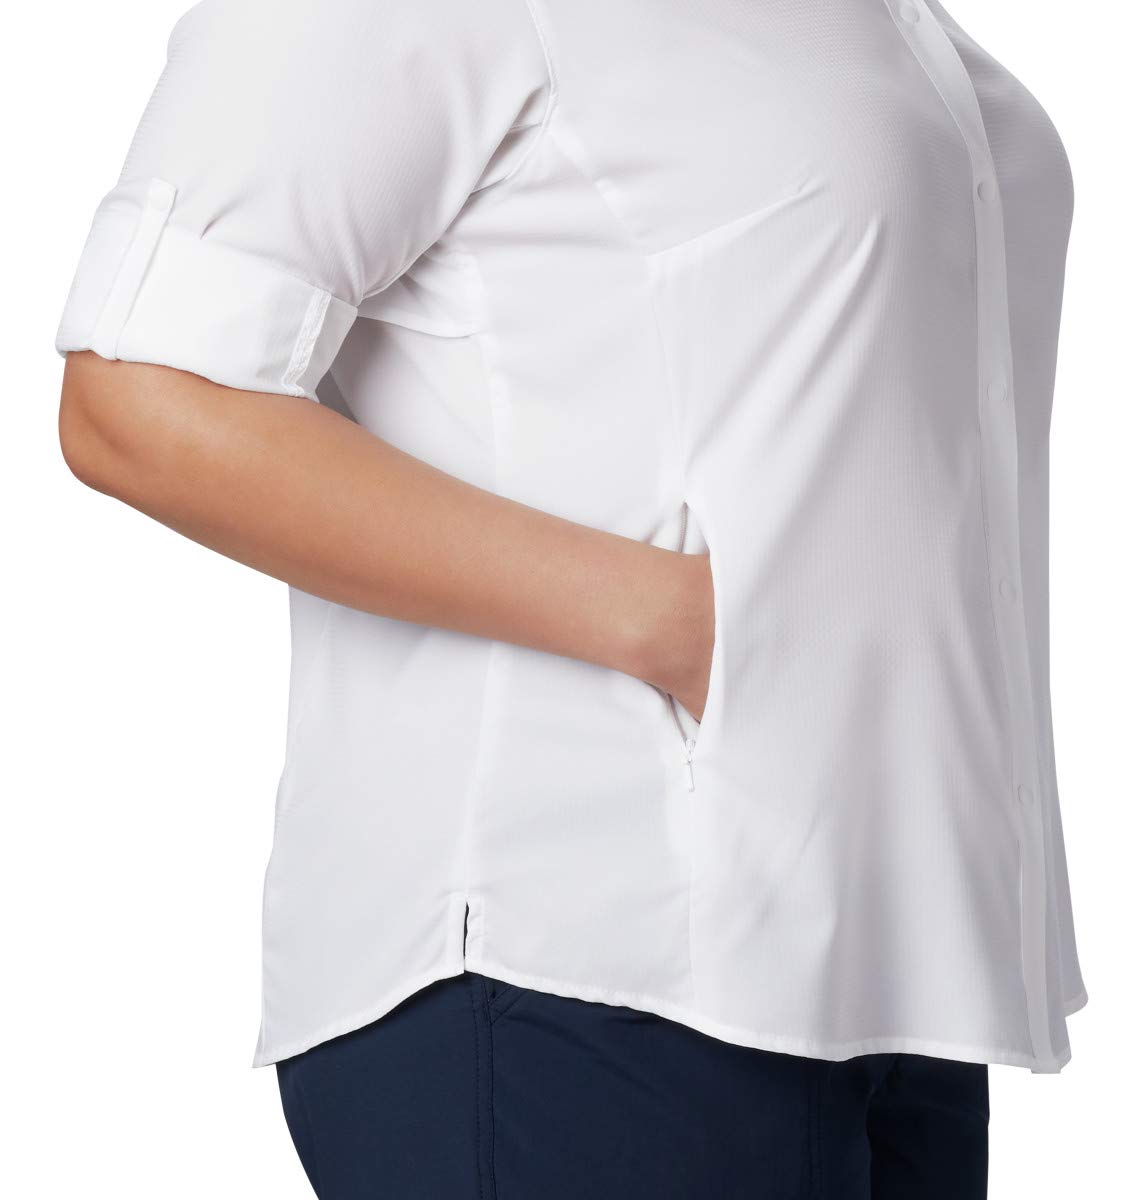 Columbia Women's Tamiami II Long Sleeve Shirt,White,Medium